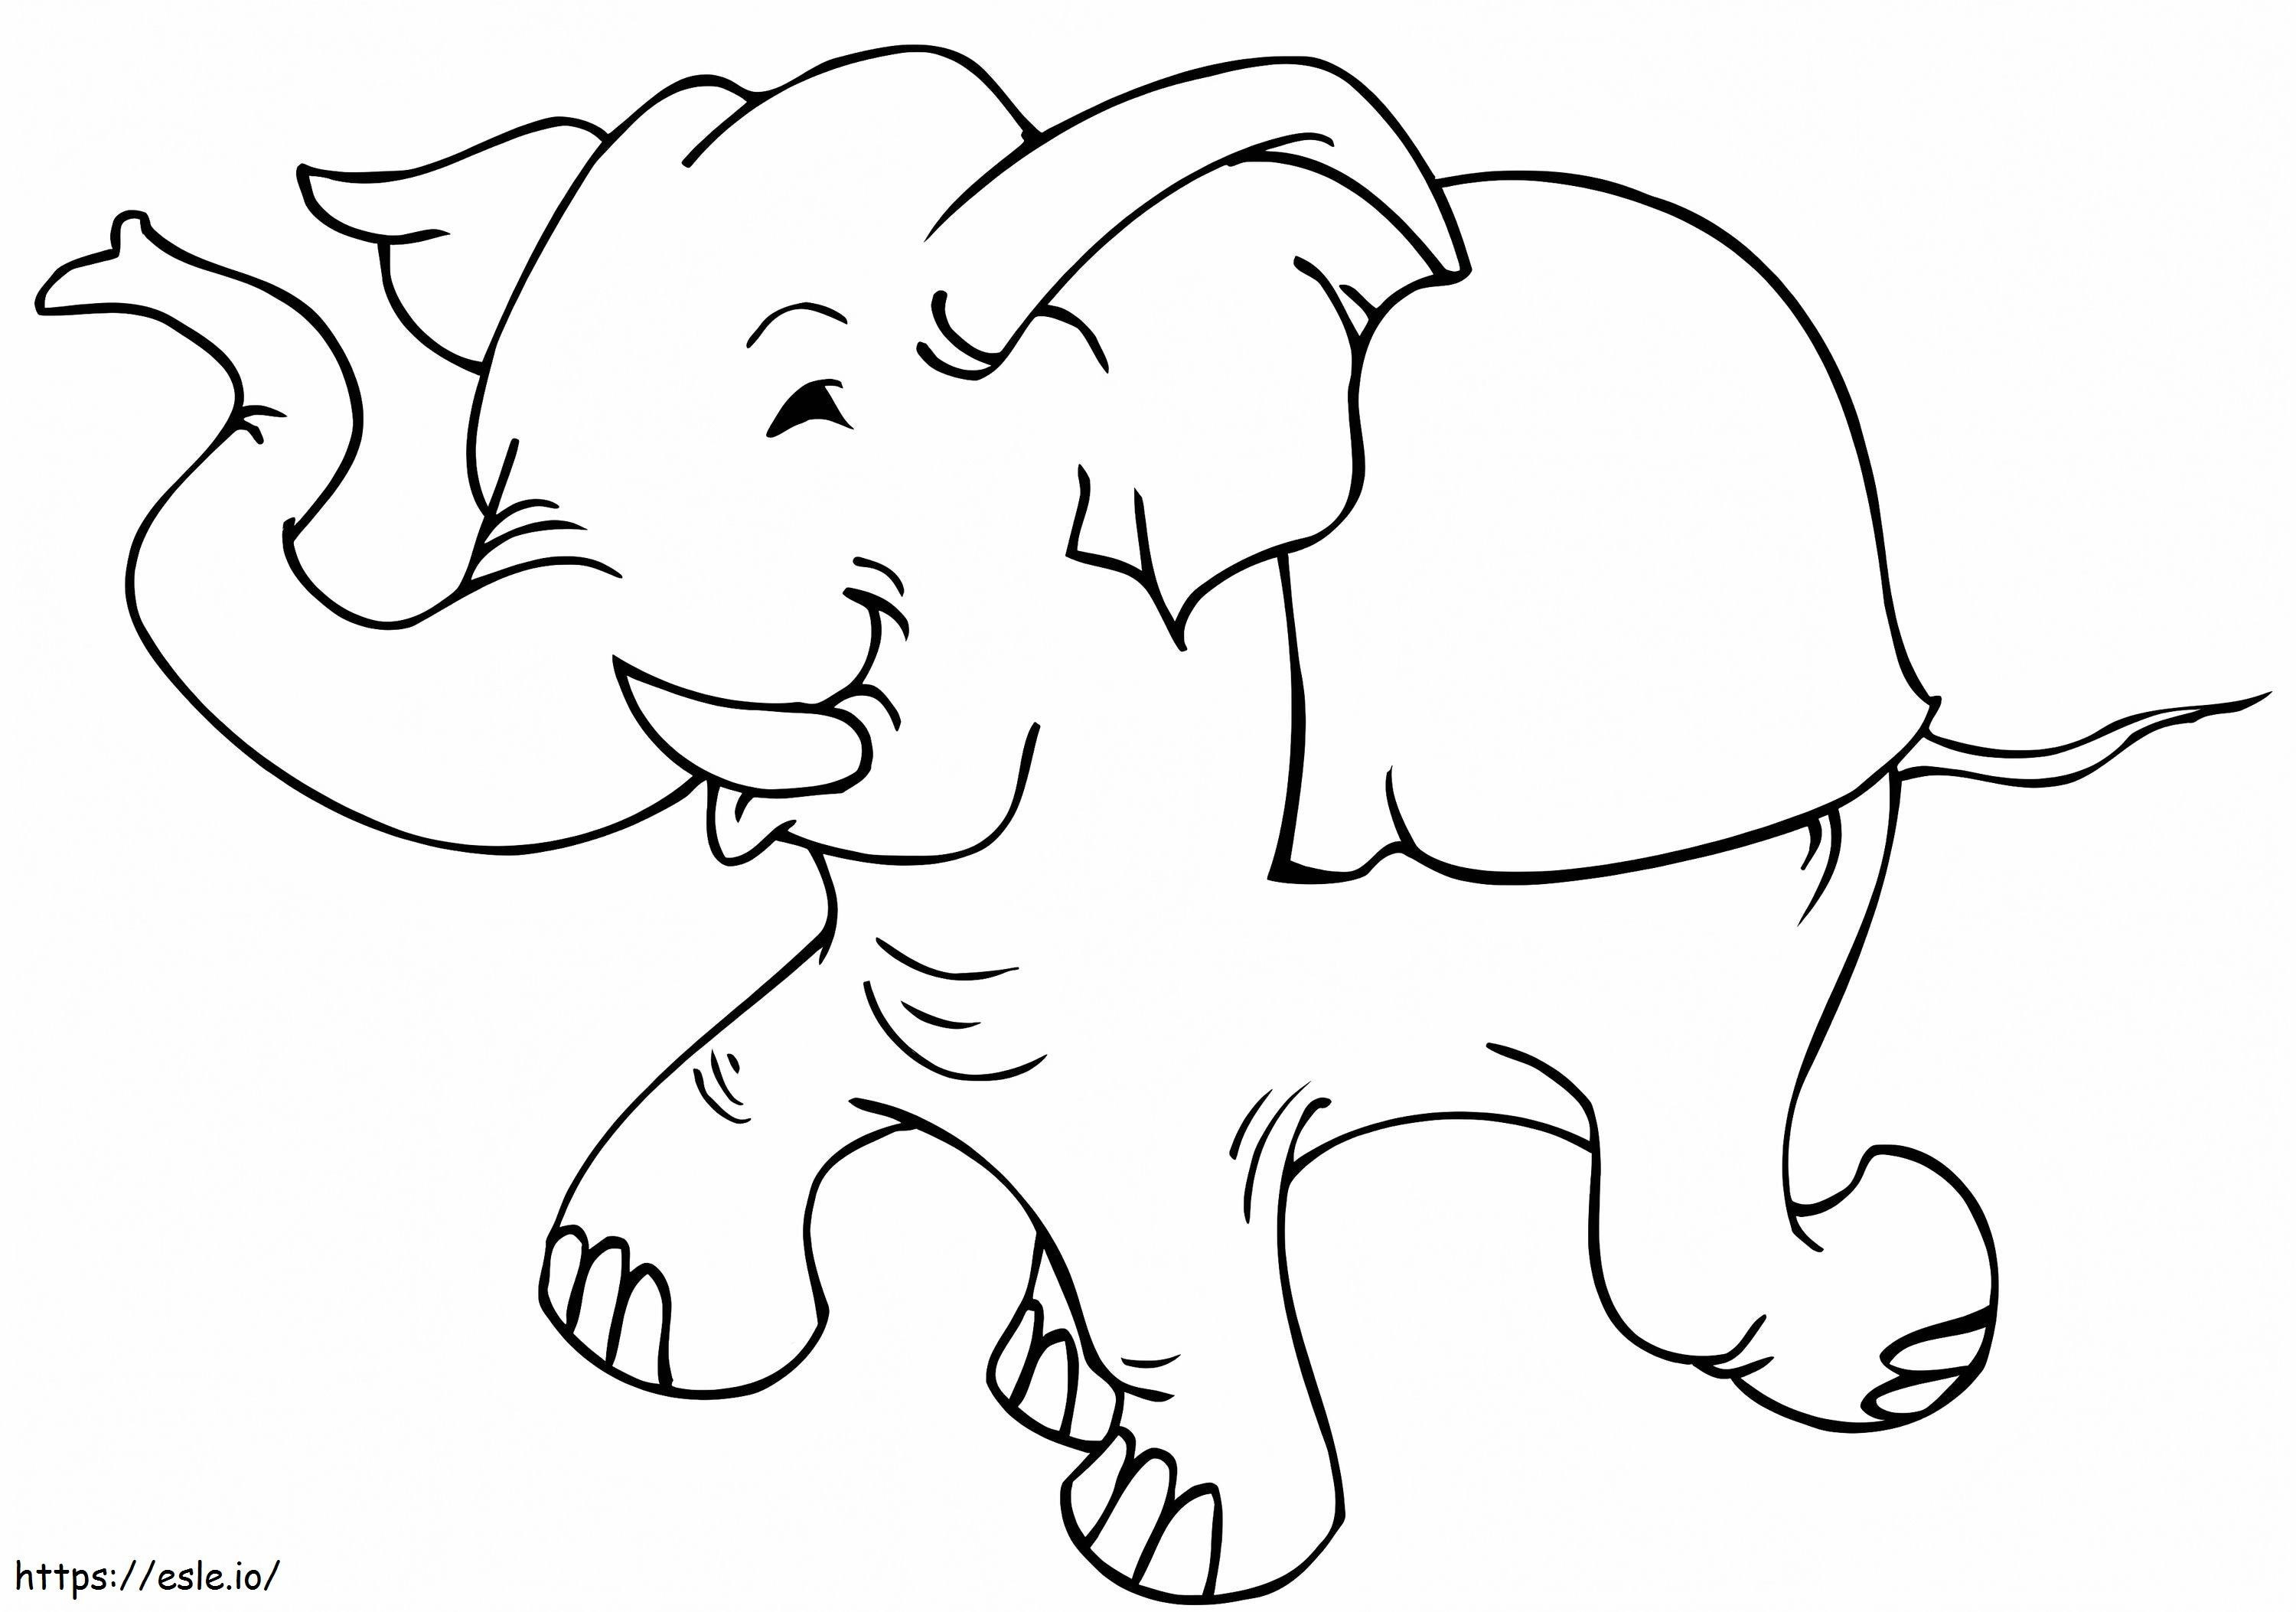 Elefante in corsa da colorare